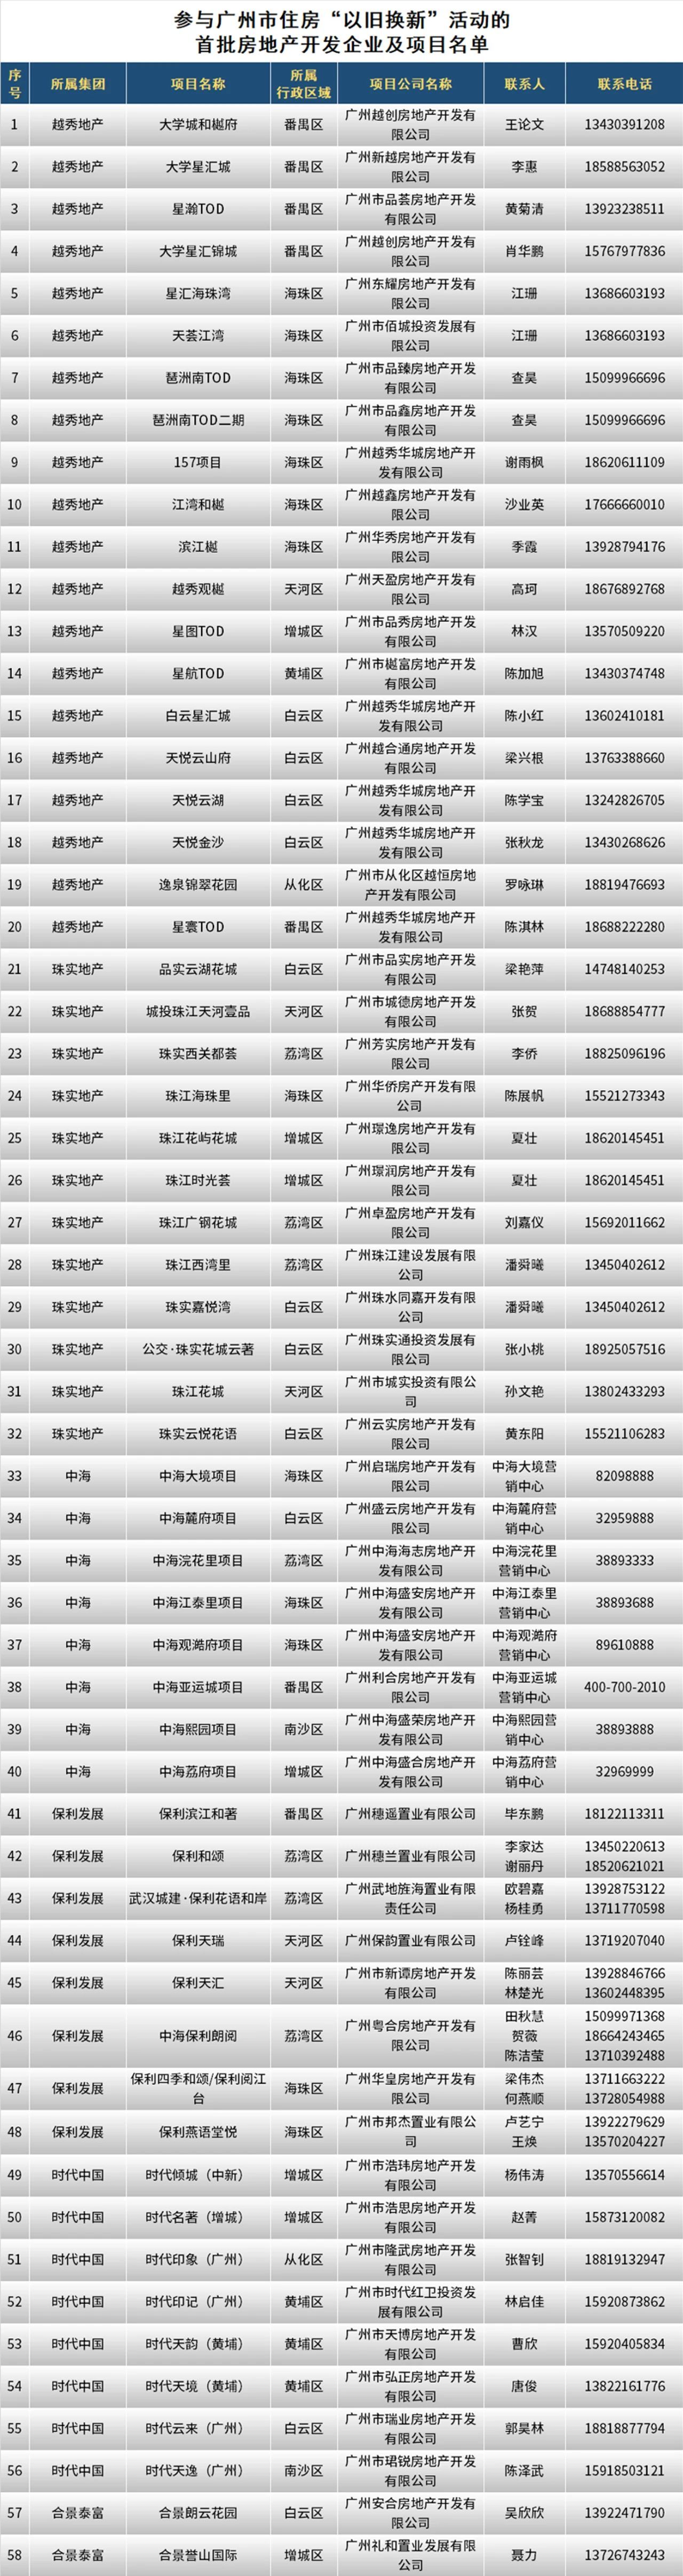 广州首批122个楼盘将介入“以旧换新”，勾当时间为期半年